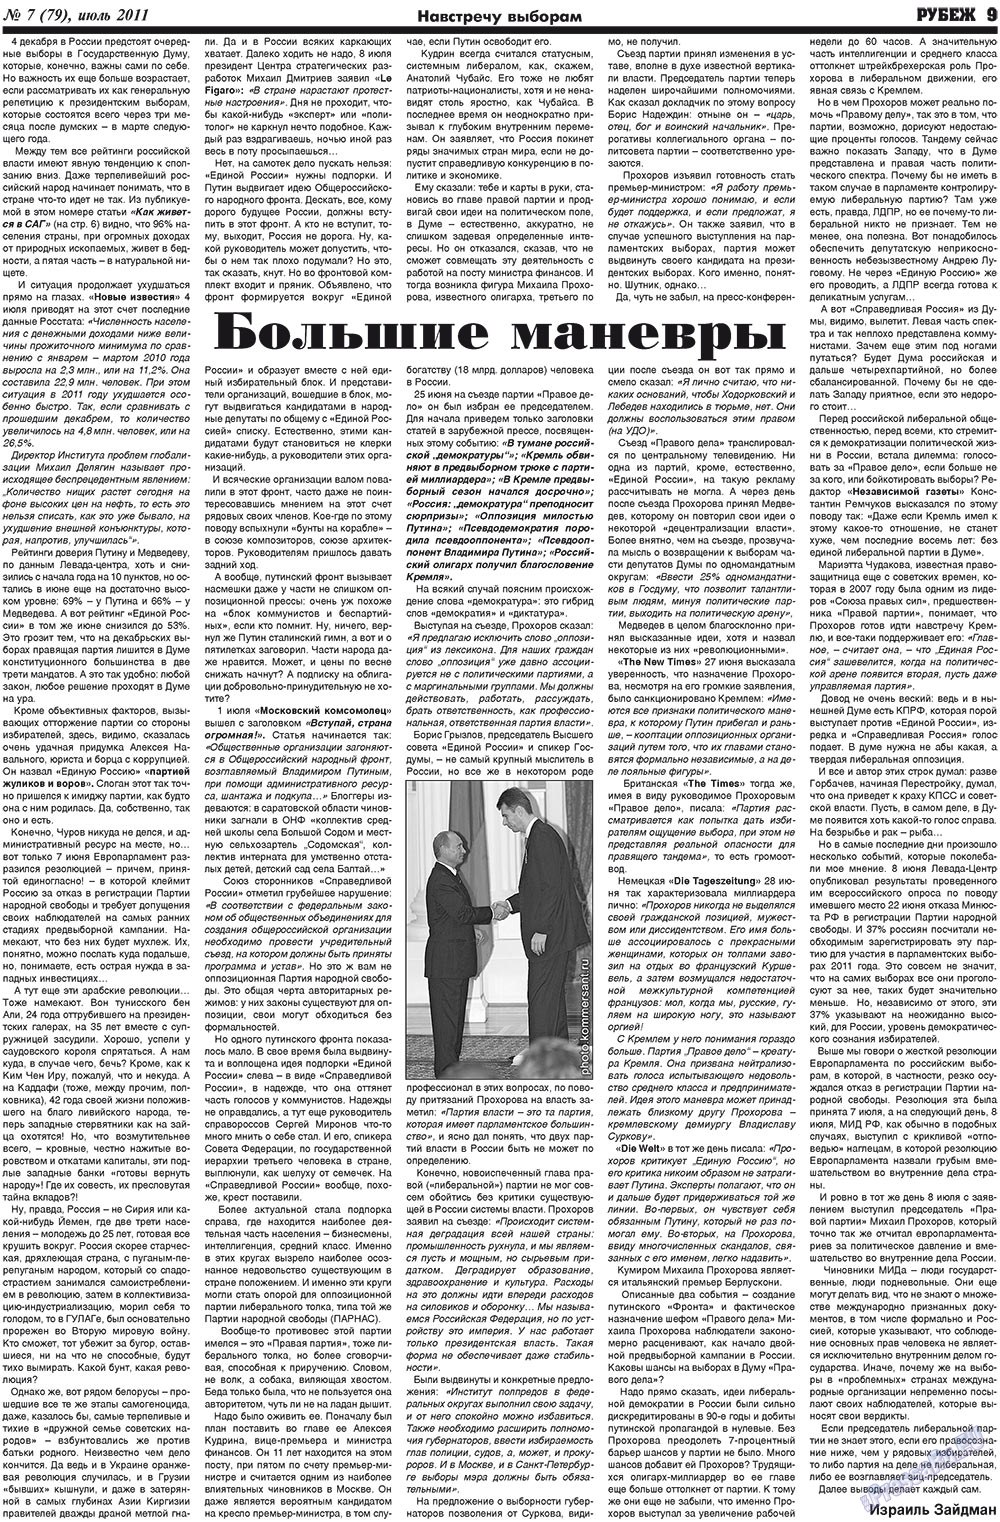 Рубеж (газета). 2011 год, номер 7, стр. 9